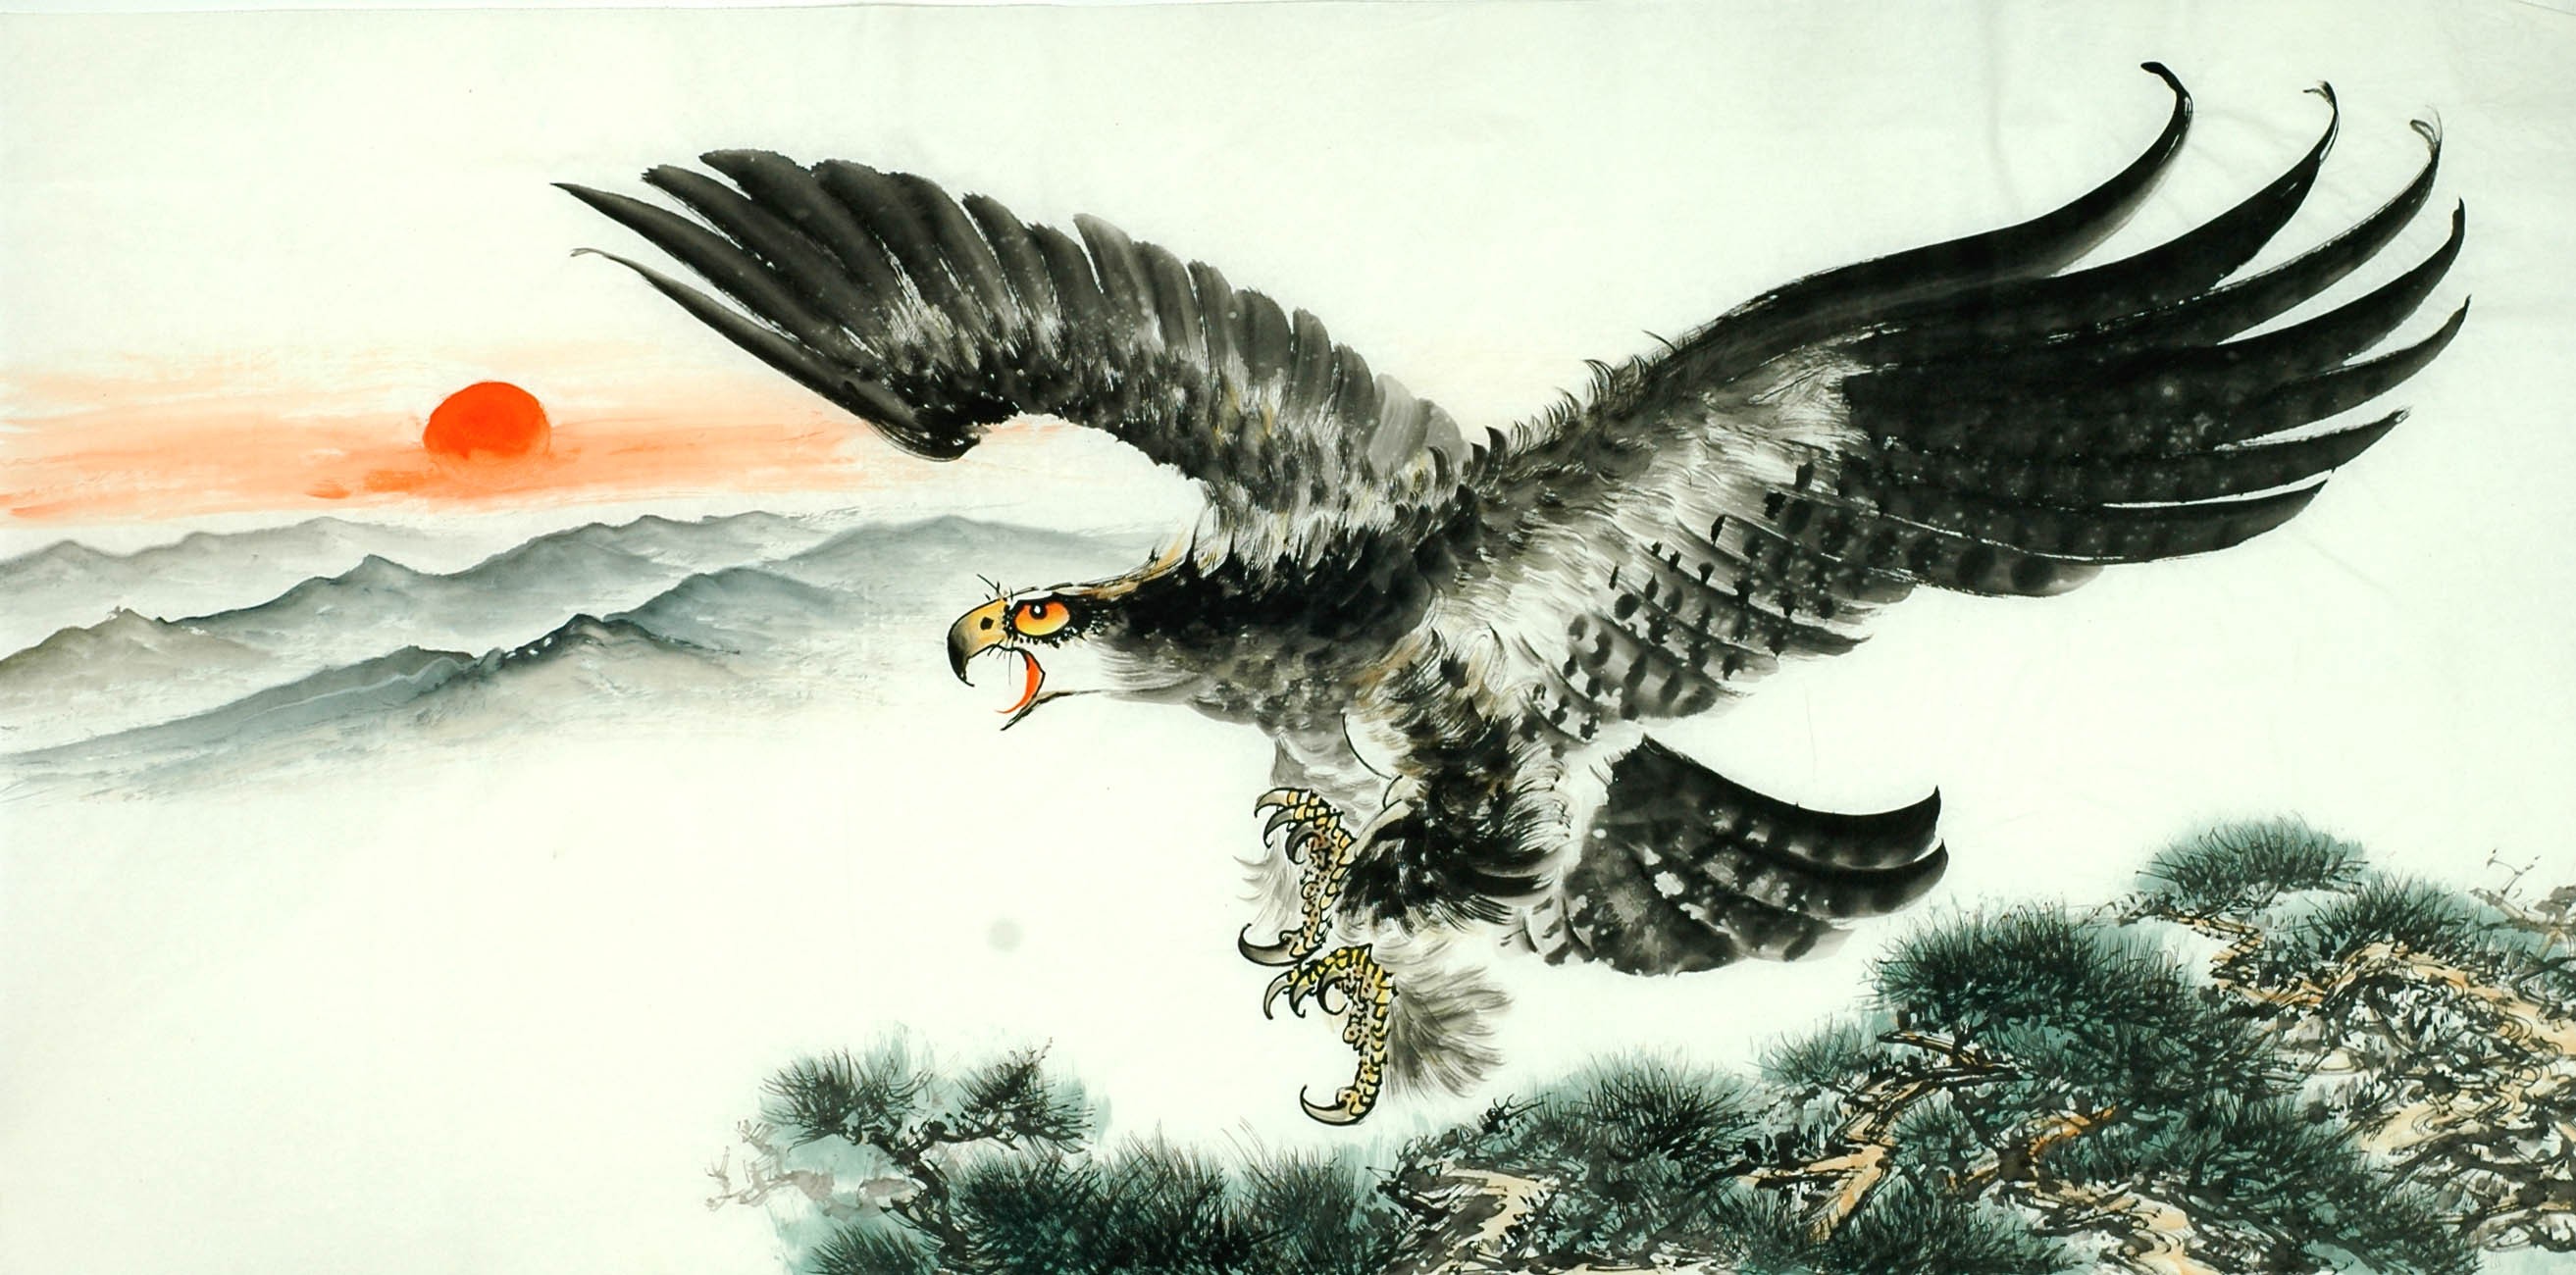 Chinese Eagle Painting - CNAG011297